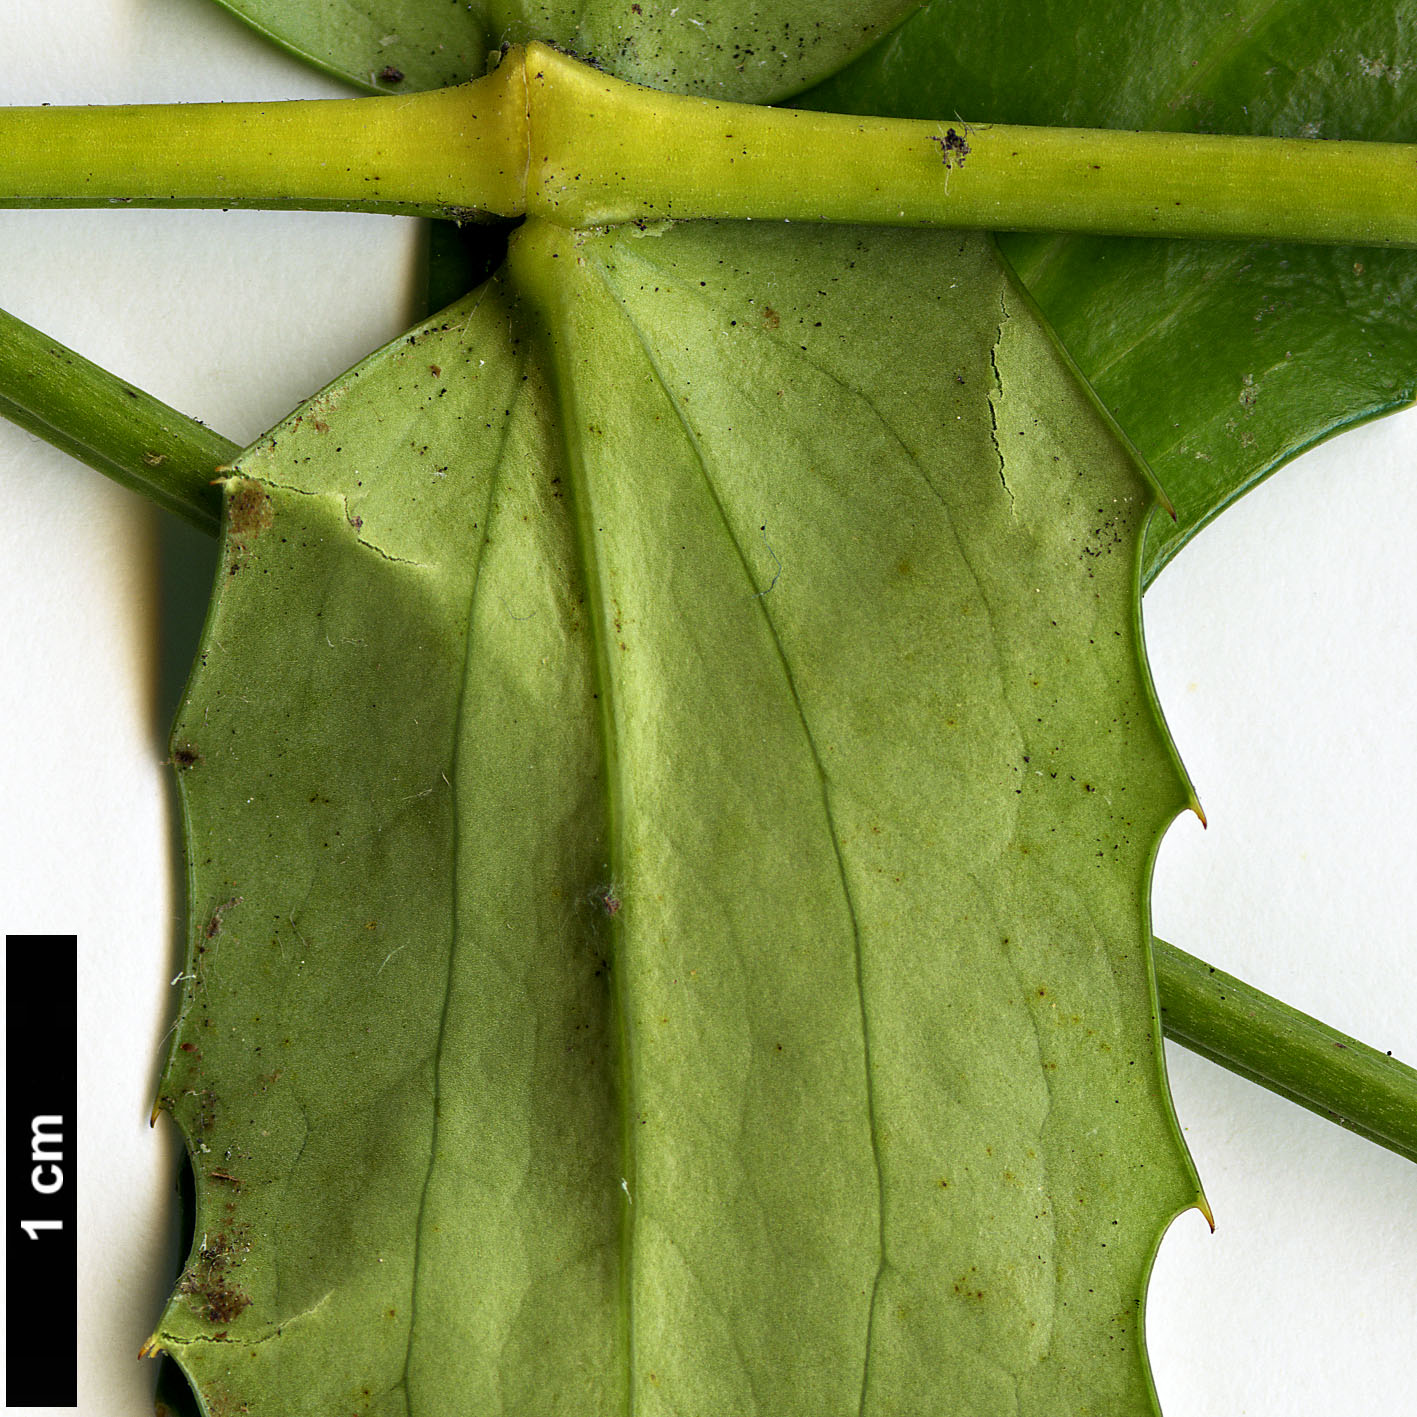 High resolution image: Family: Berberidaceae - Genus: Mahonia - Taxon: oiwakensis